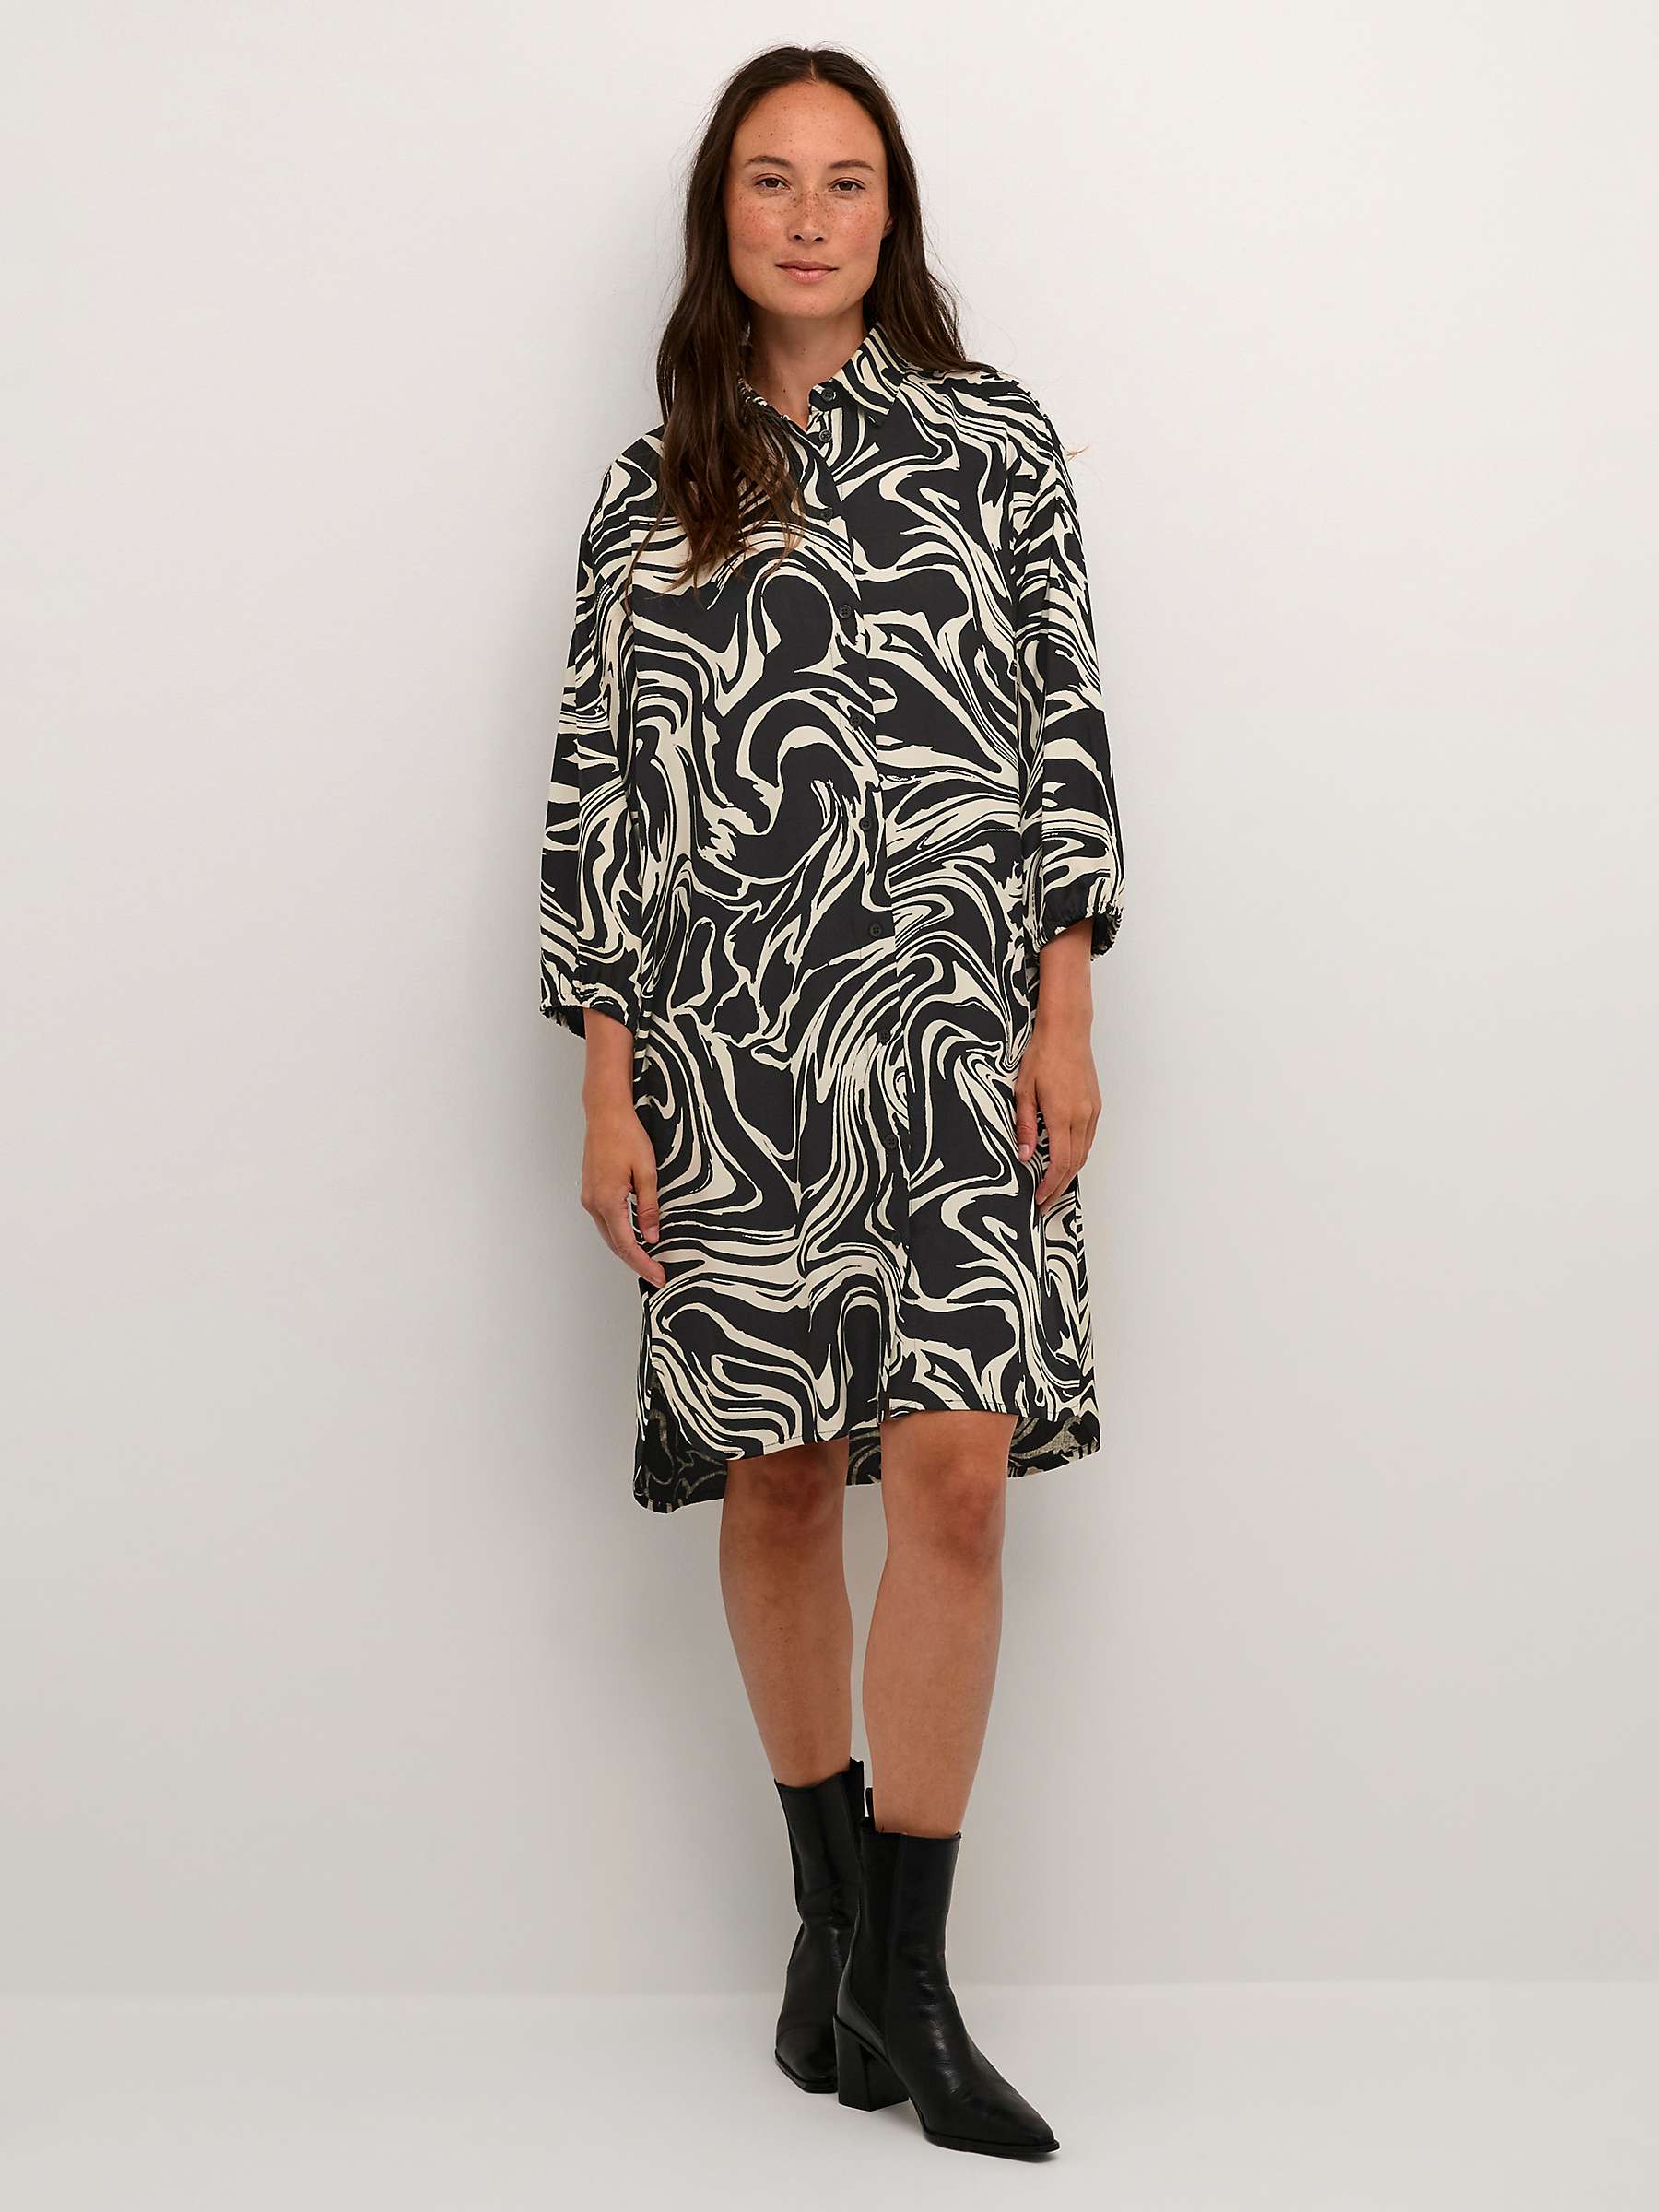 Buy KAFFECarmen Abstract Print Knee Length Shirt Dress, Black/White Online at johnlewis.com